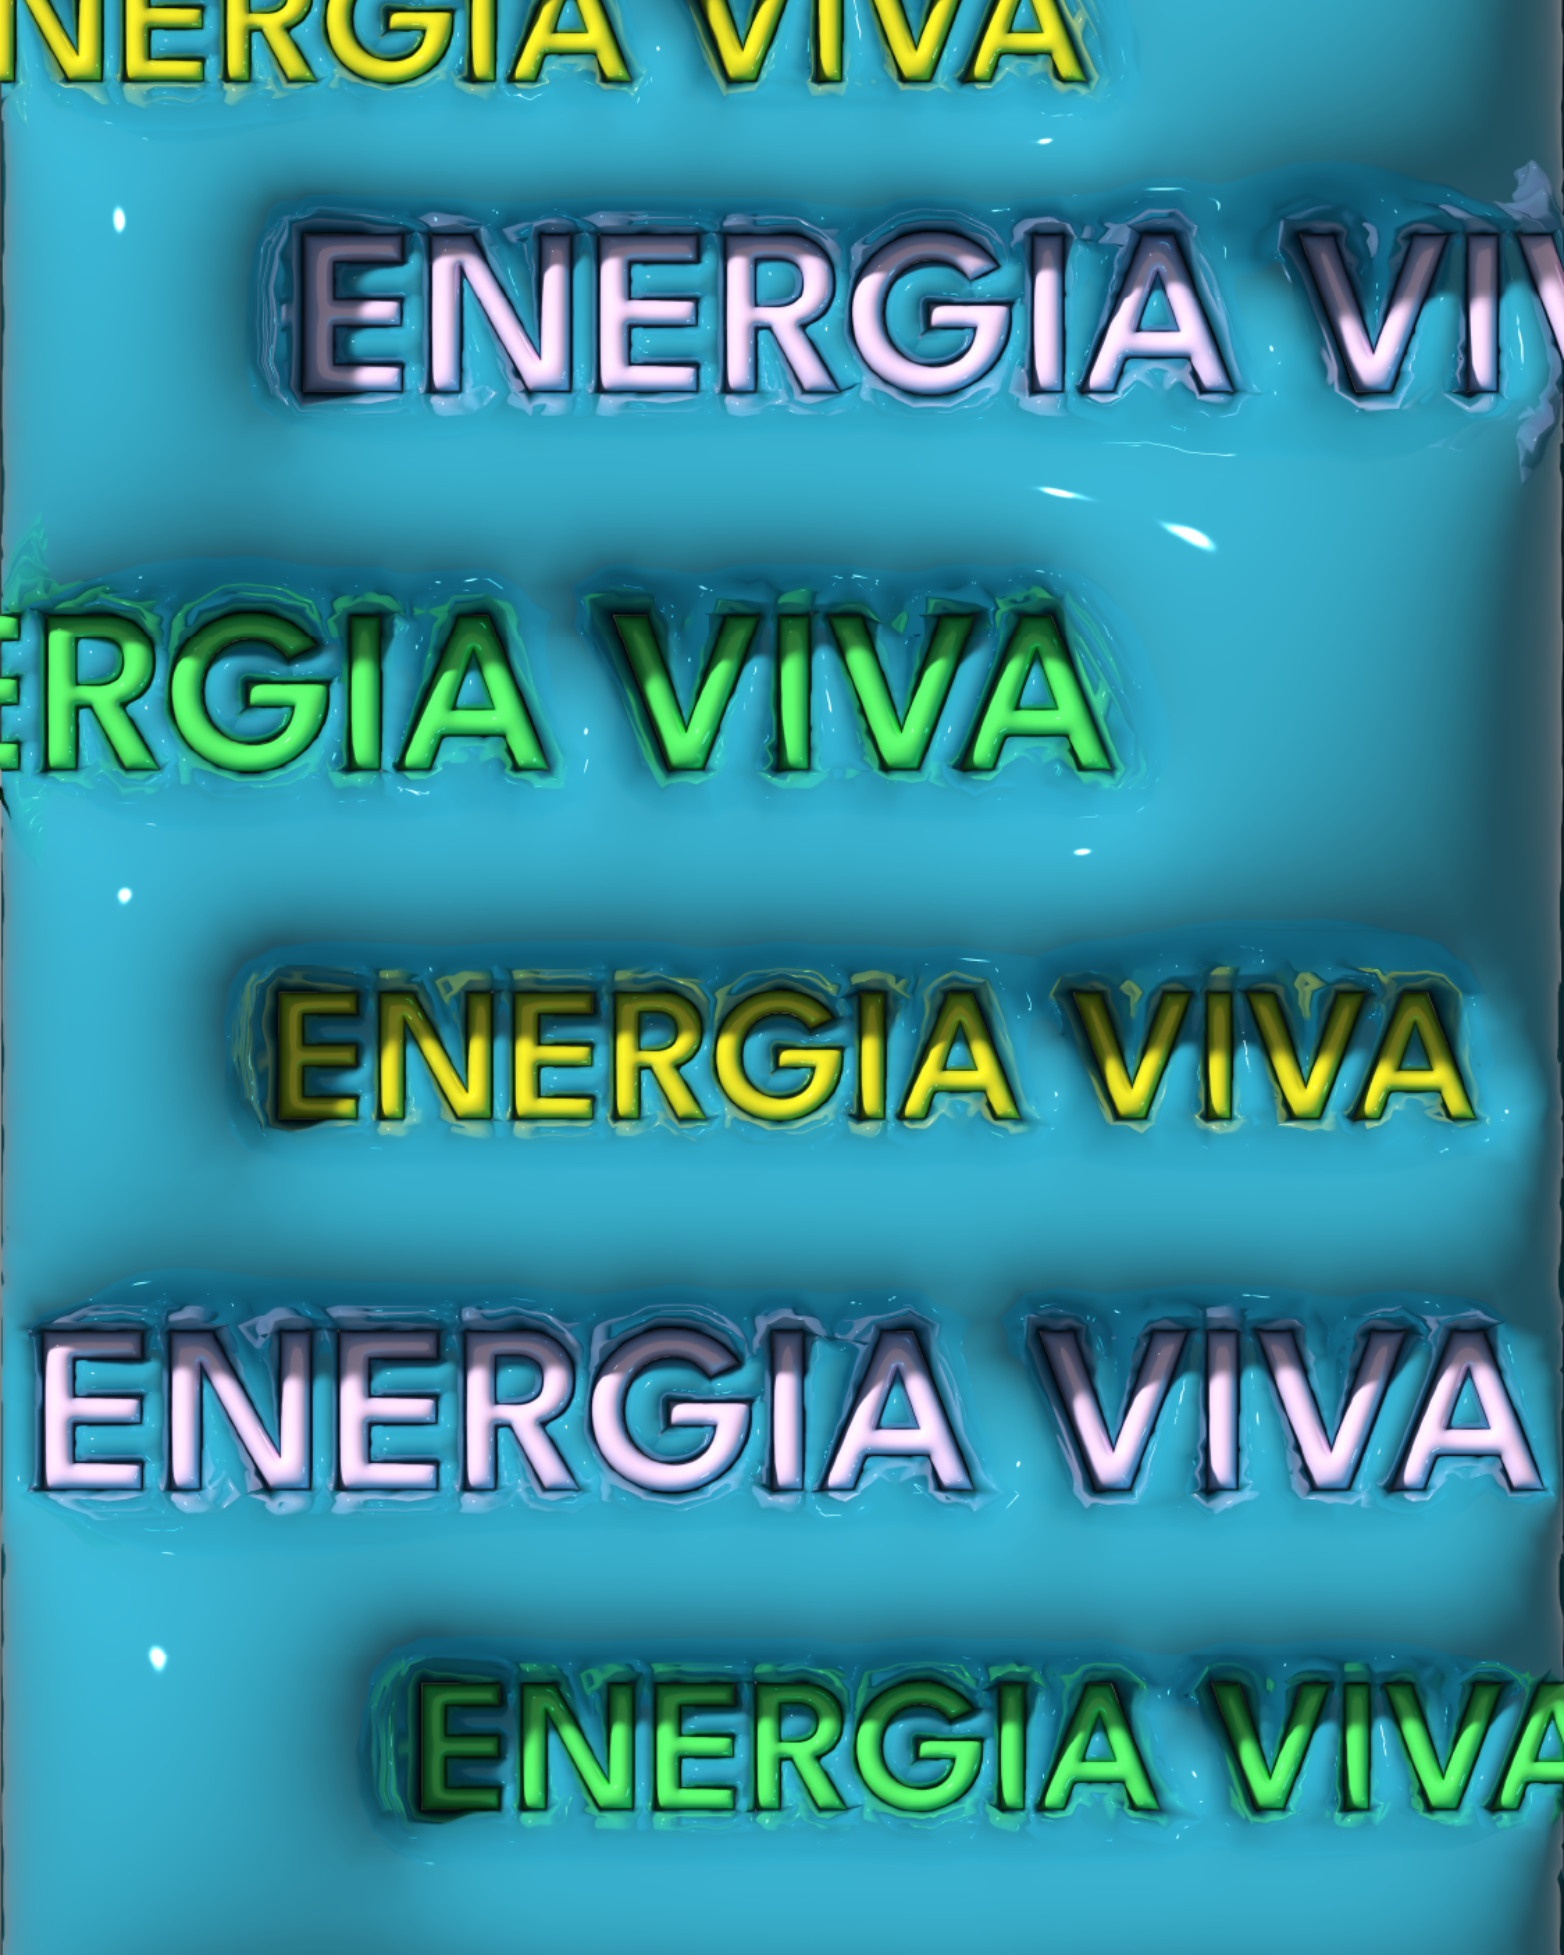 energia-viva-wallpaper-3d